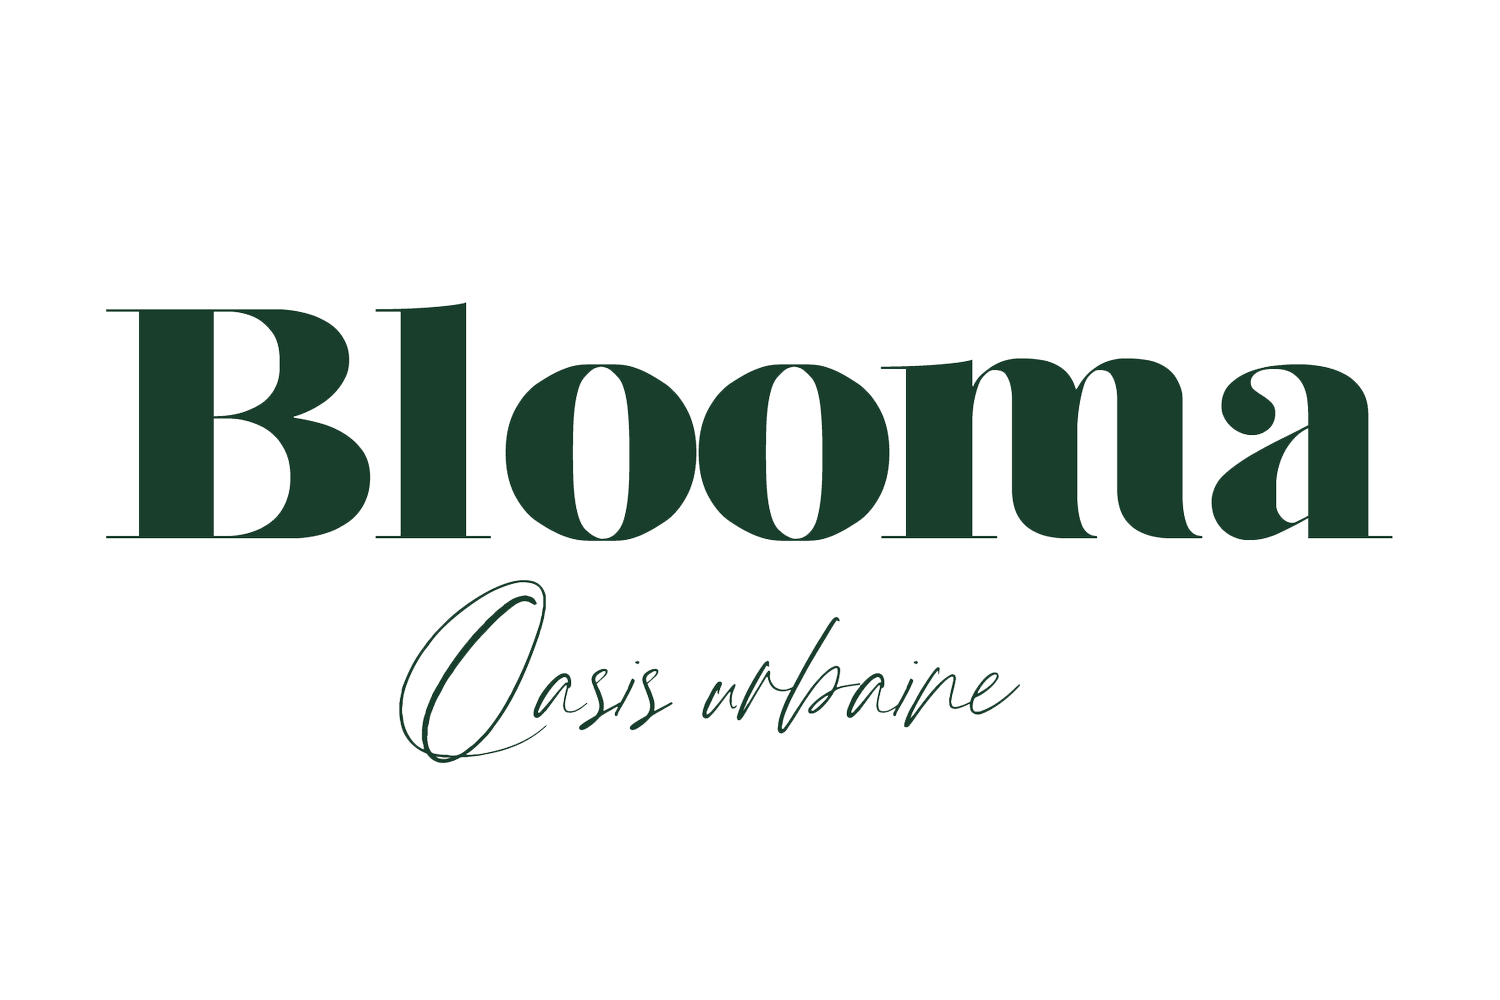 Blooma-oasis-urbaine